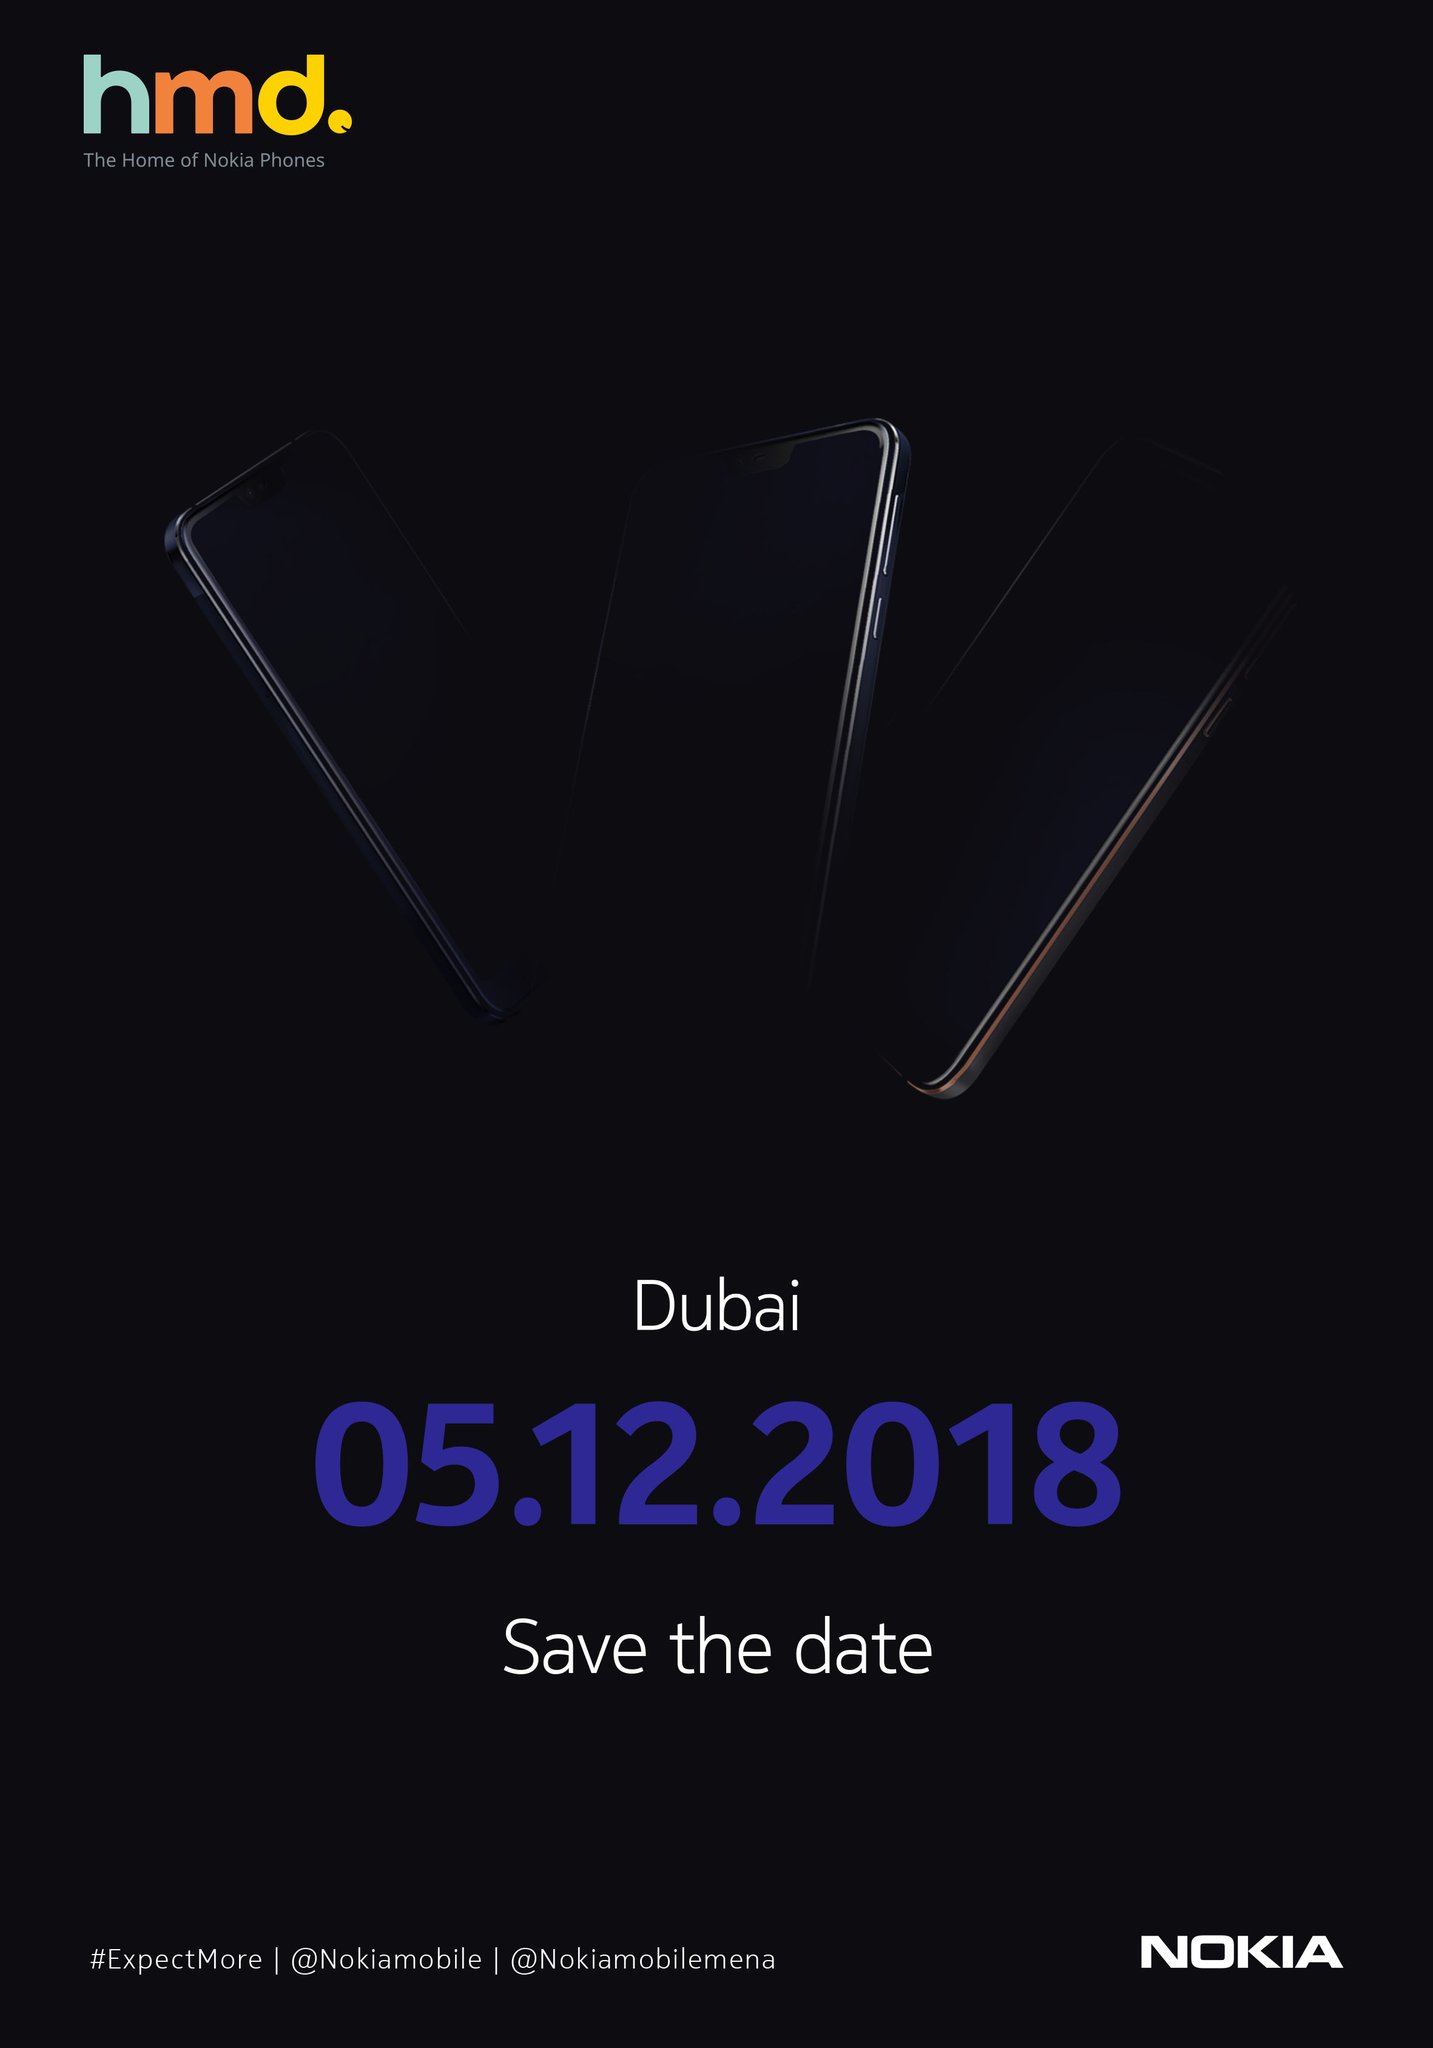 Nokia Dubai event